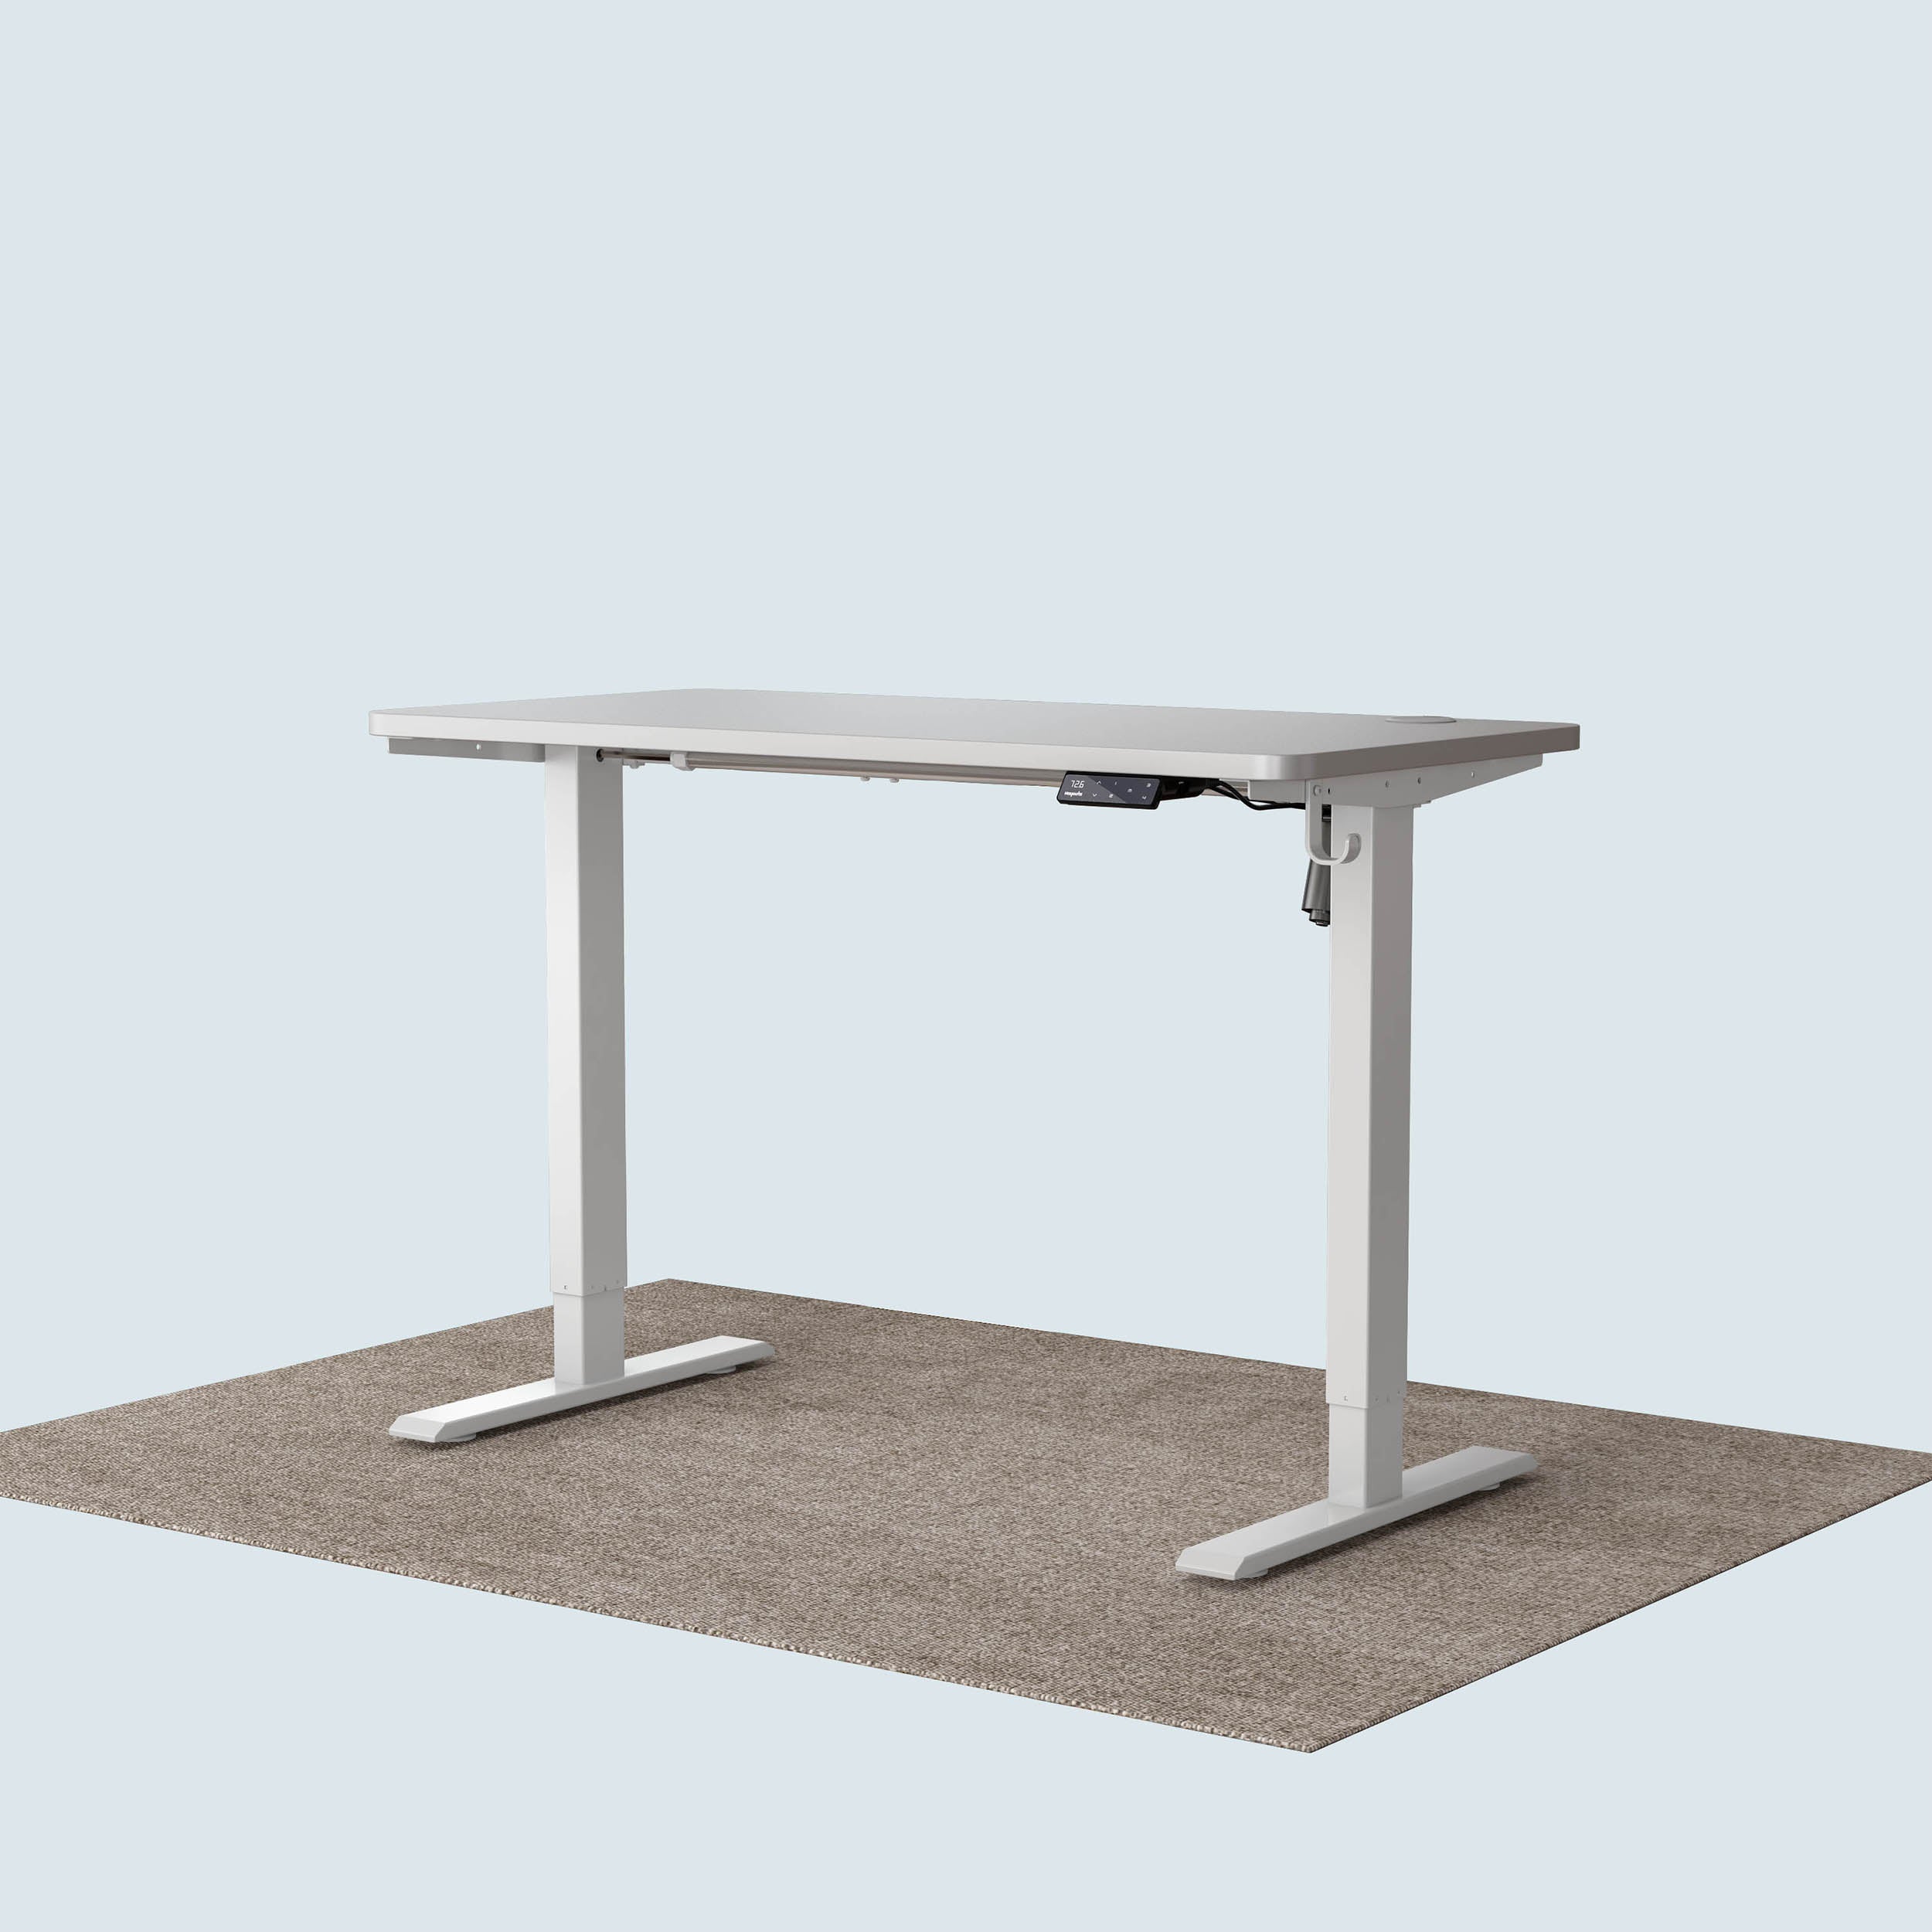 Maidesite T1 Basic standing desk white frame and 120cm desktop